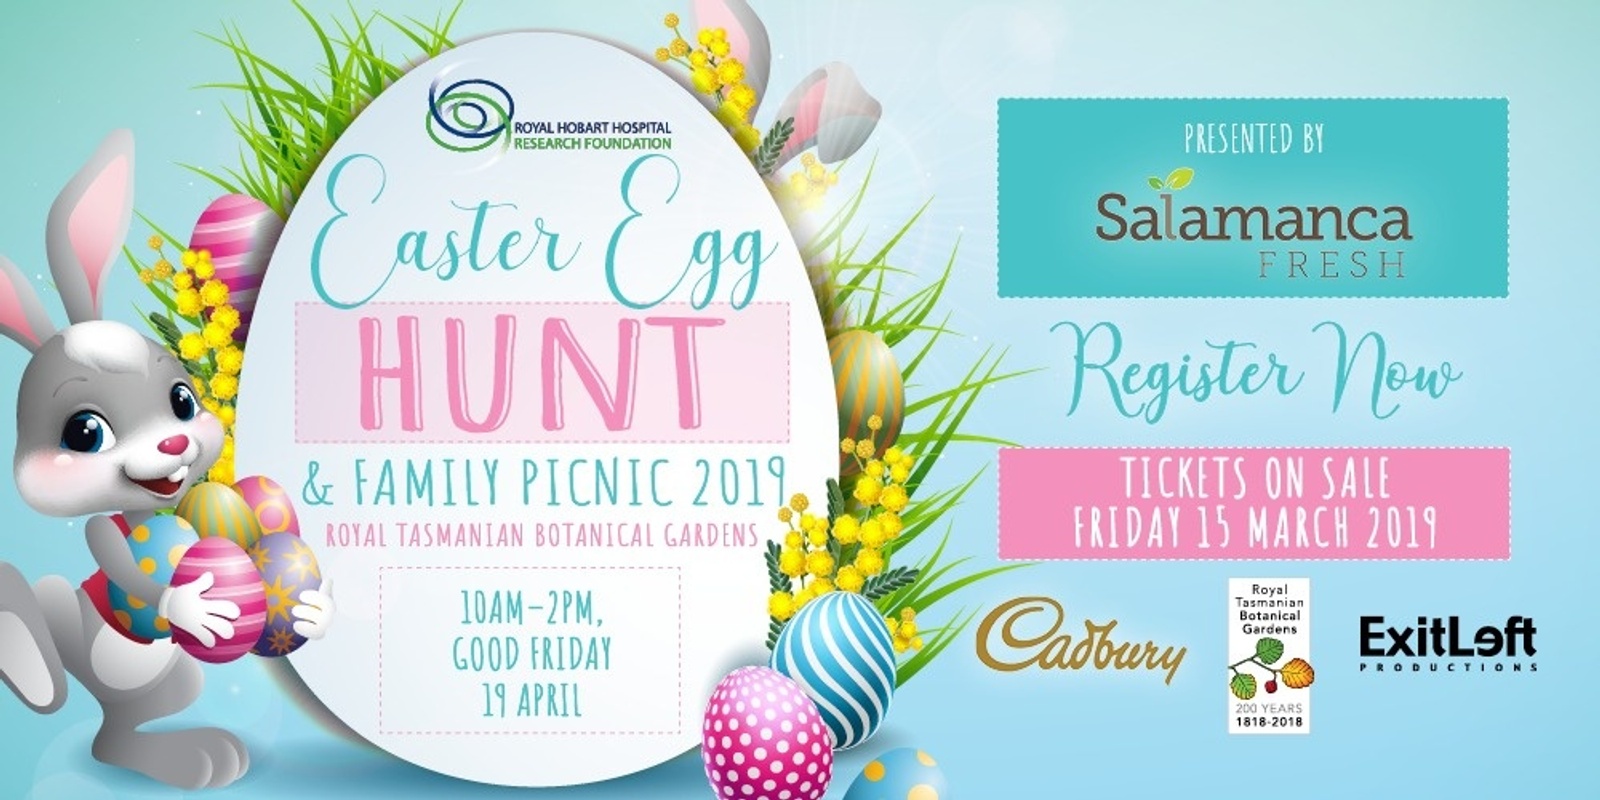 Banner image for 2019 Easter Egg Hunt & Family Picnic